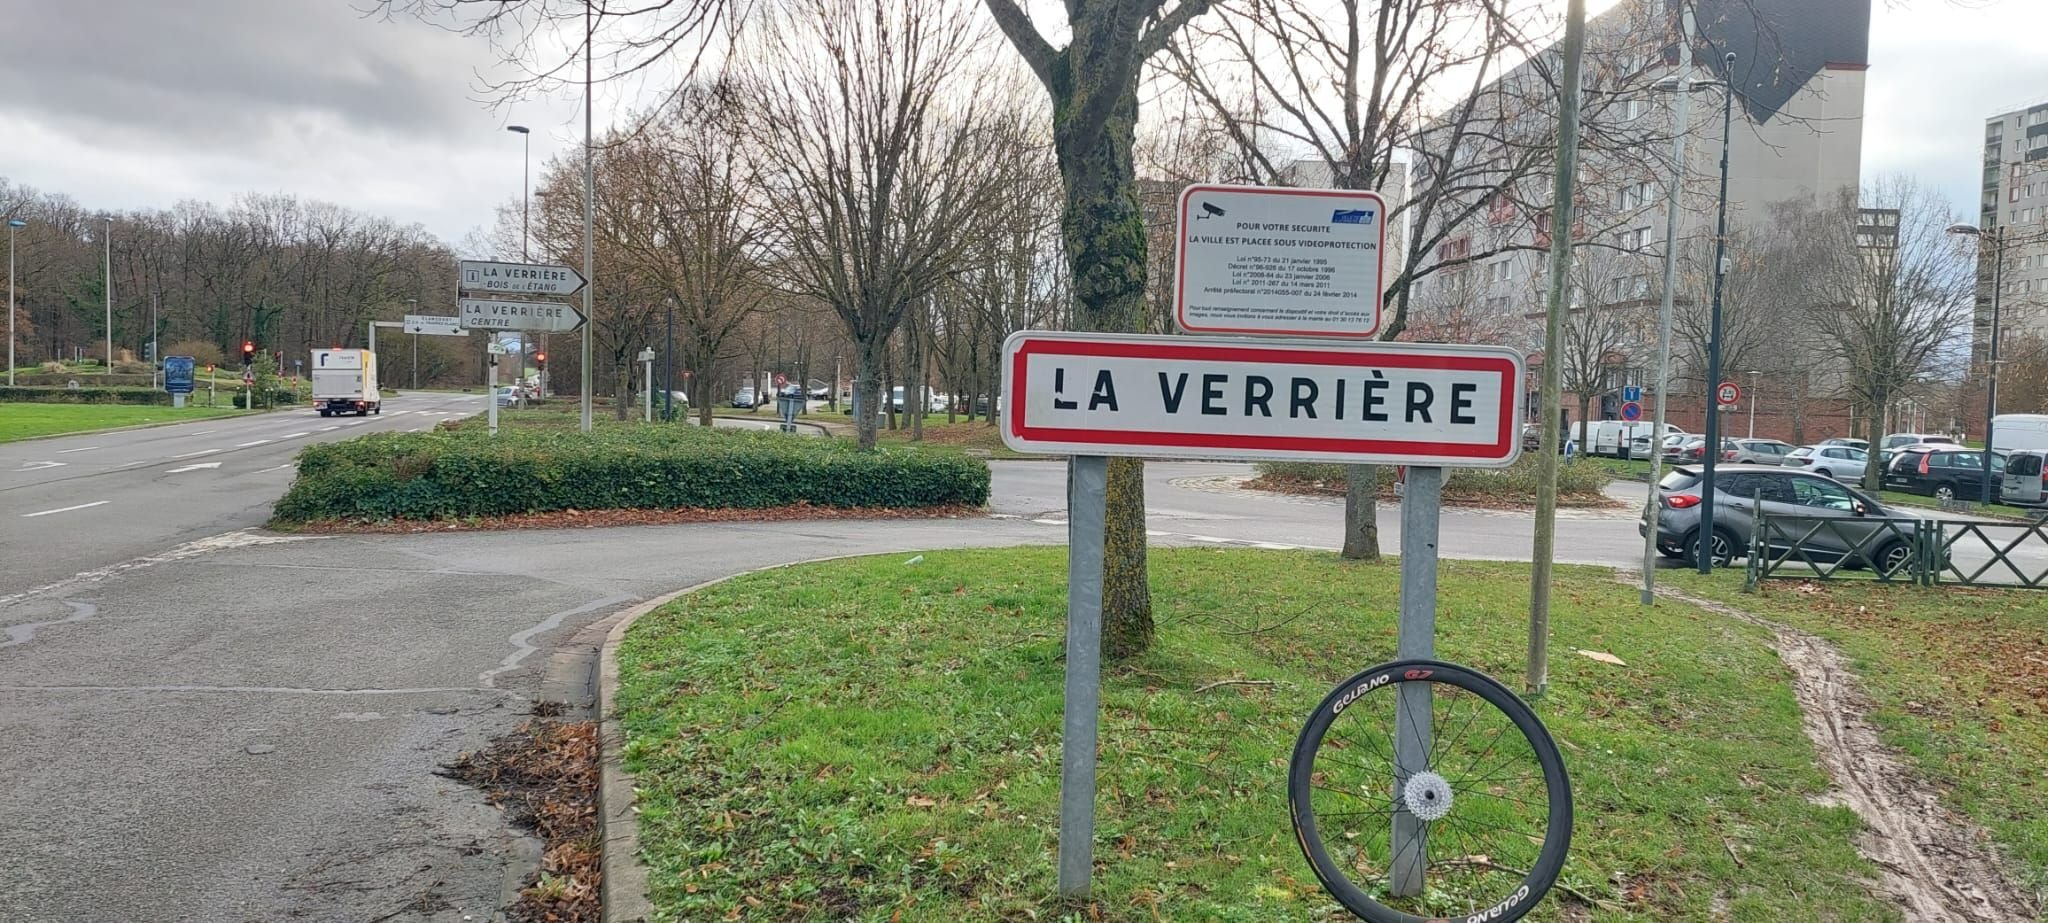 La Verrière (Yvelines), le 5 janvier. C'est au niveau du bois de l'Etang que l'arrivée de la première étape du Paris-Nice 2023 sera jugée, le 5 mars. LP/Stéphane Corby